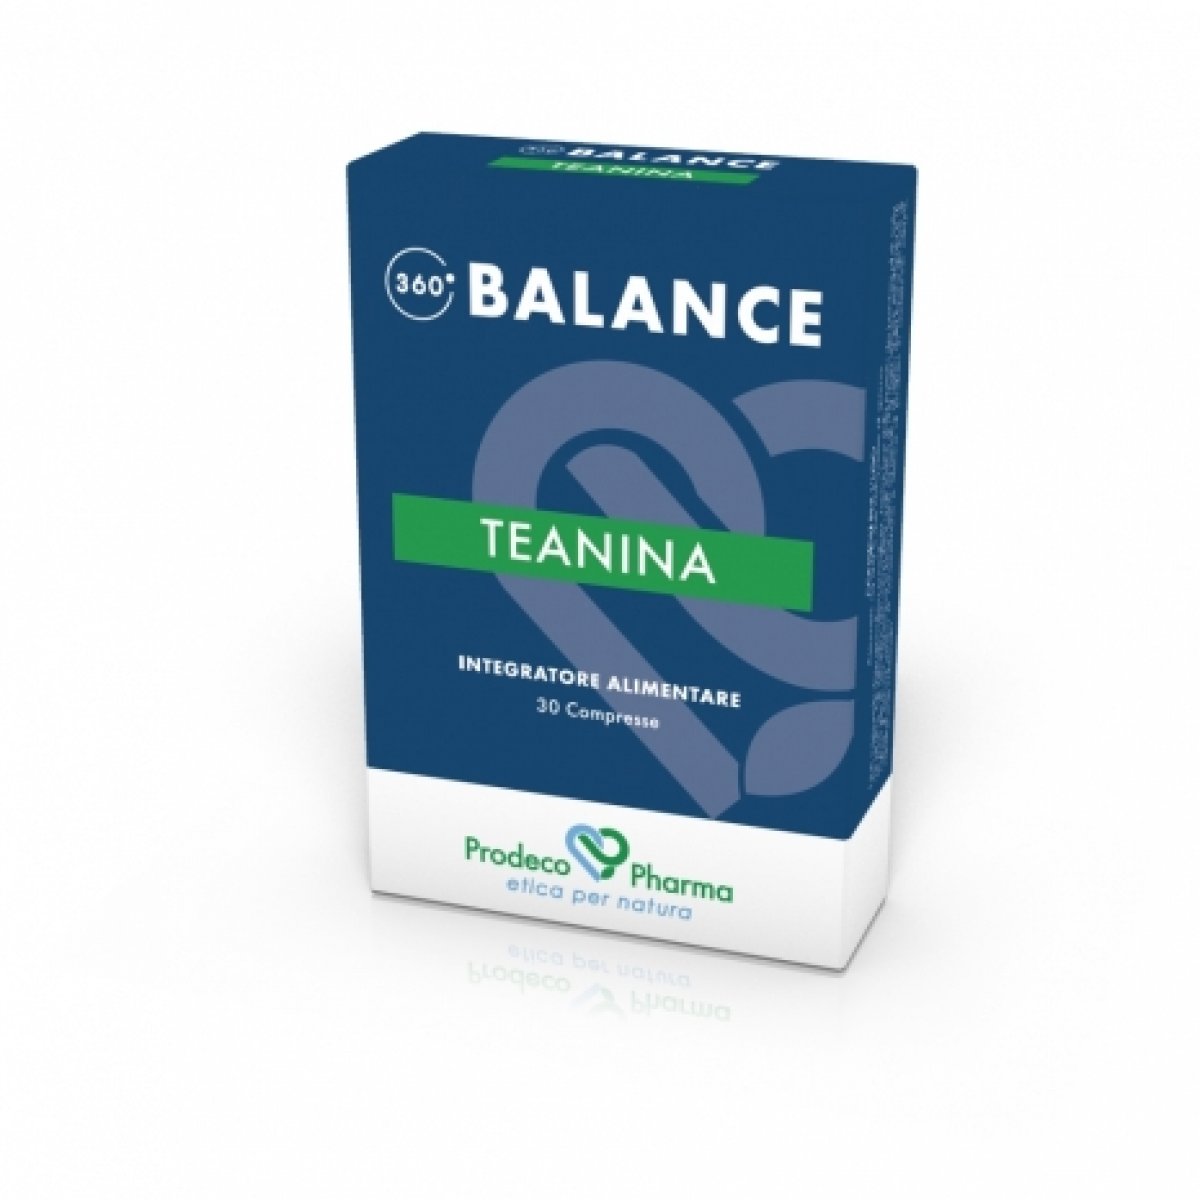 360 BALANCE TEANINA 30 cpr - Prodeco Pharma 360 BALANCE TEANINA è un integratore alimentare a base di Tè verde che favorisce un effetto calmante e contribuisce all’equilibrio di uno stato mentale rilassato e recettivo. 30 compresse